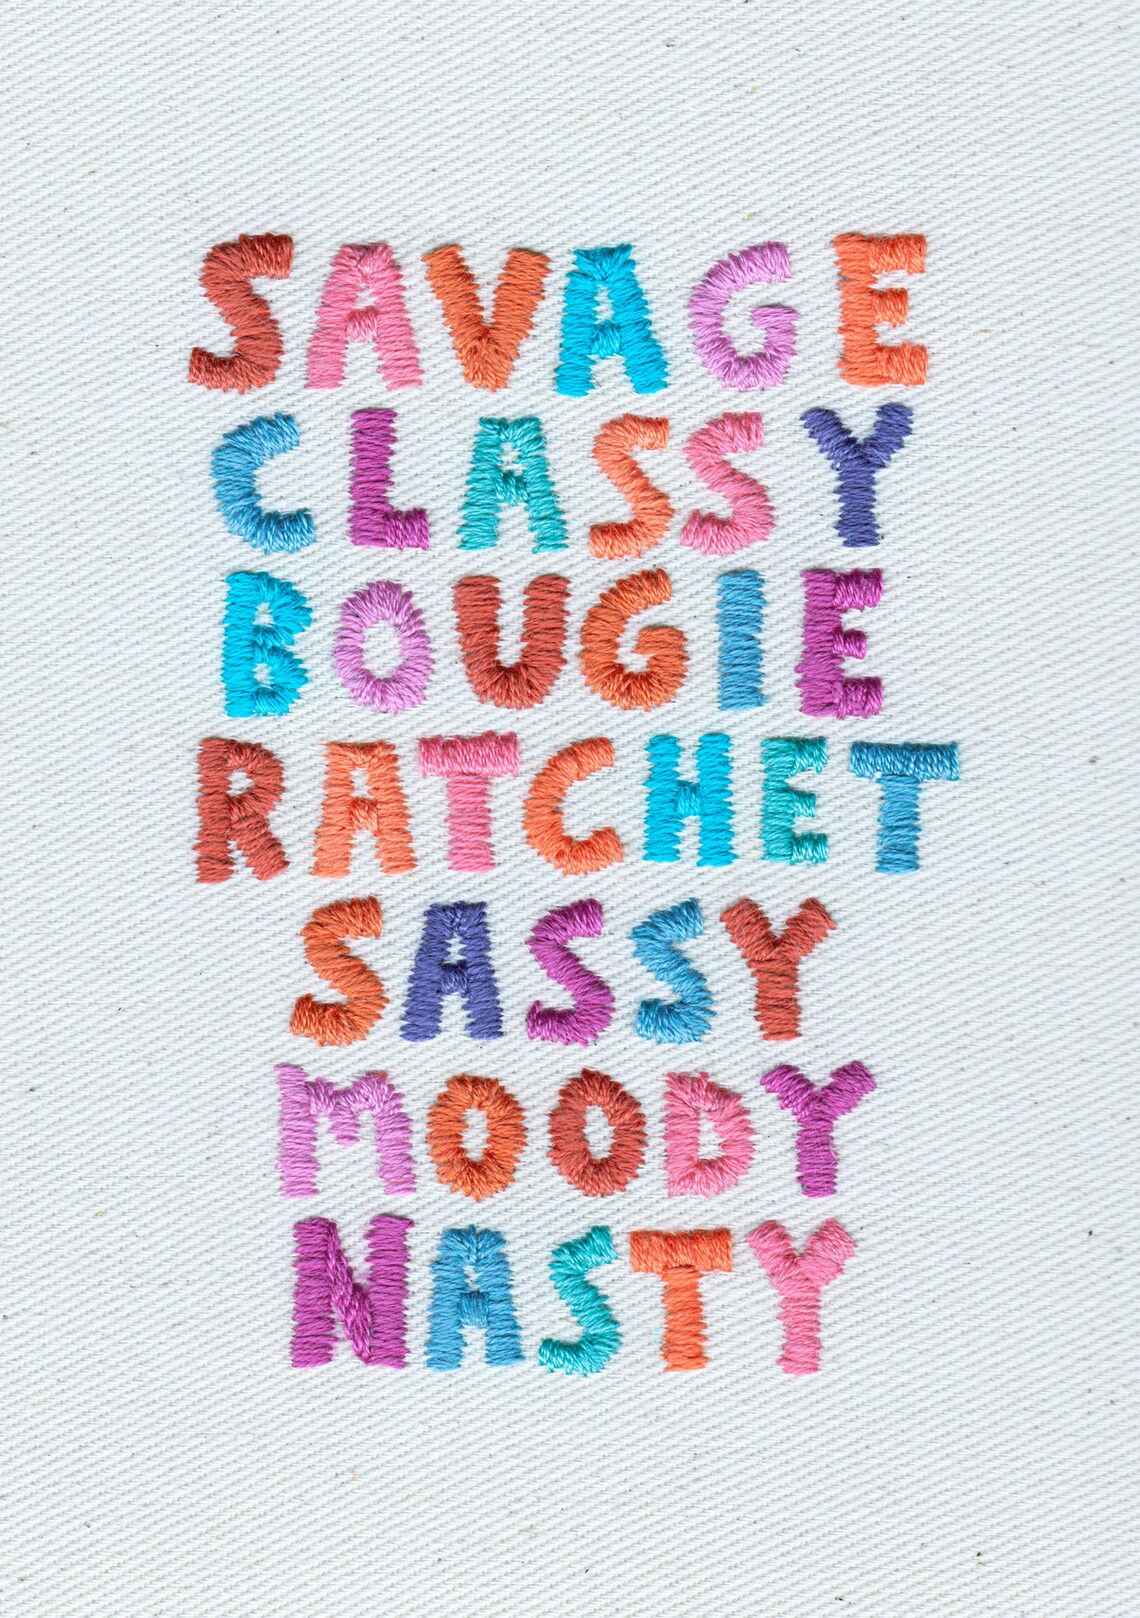 Savage Classy Bougie Ratchet Sassy Moody Nasty Print A5 Etsy